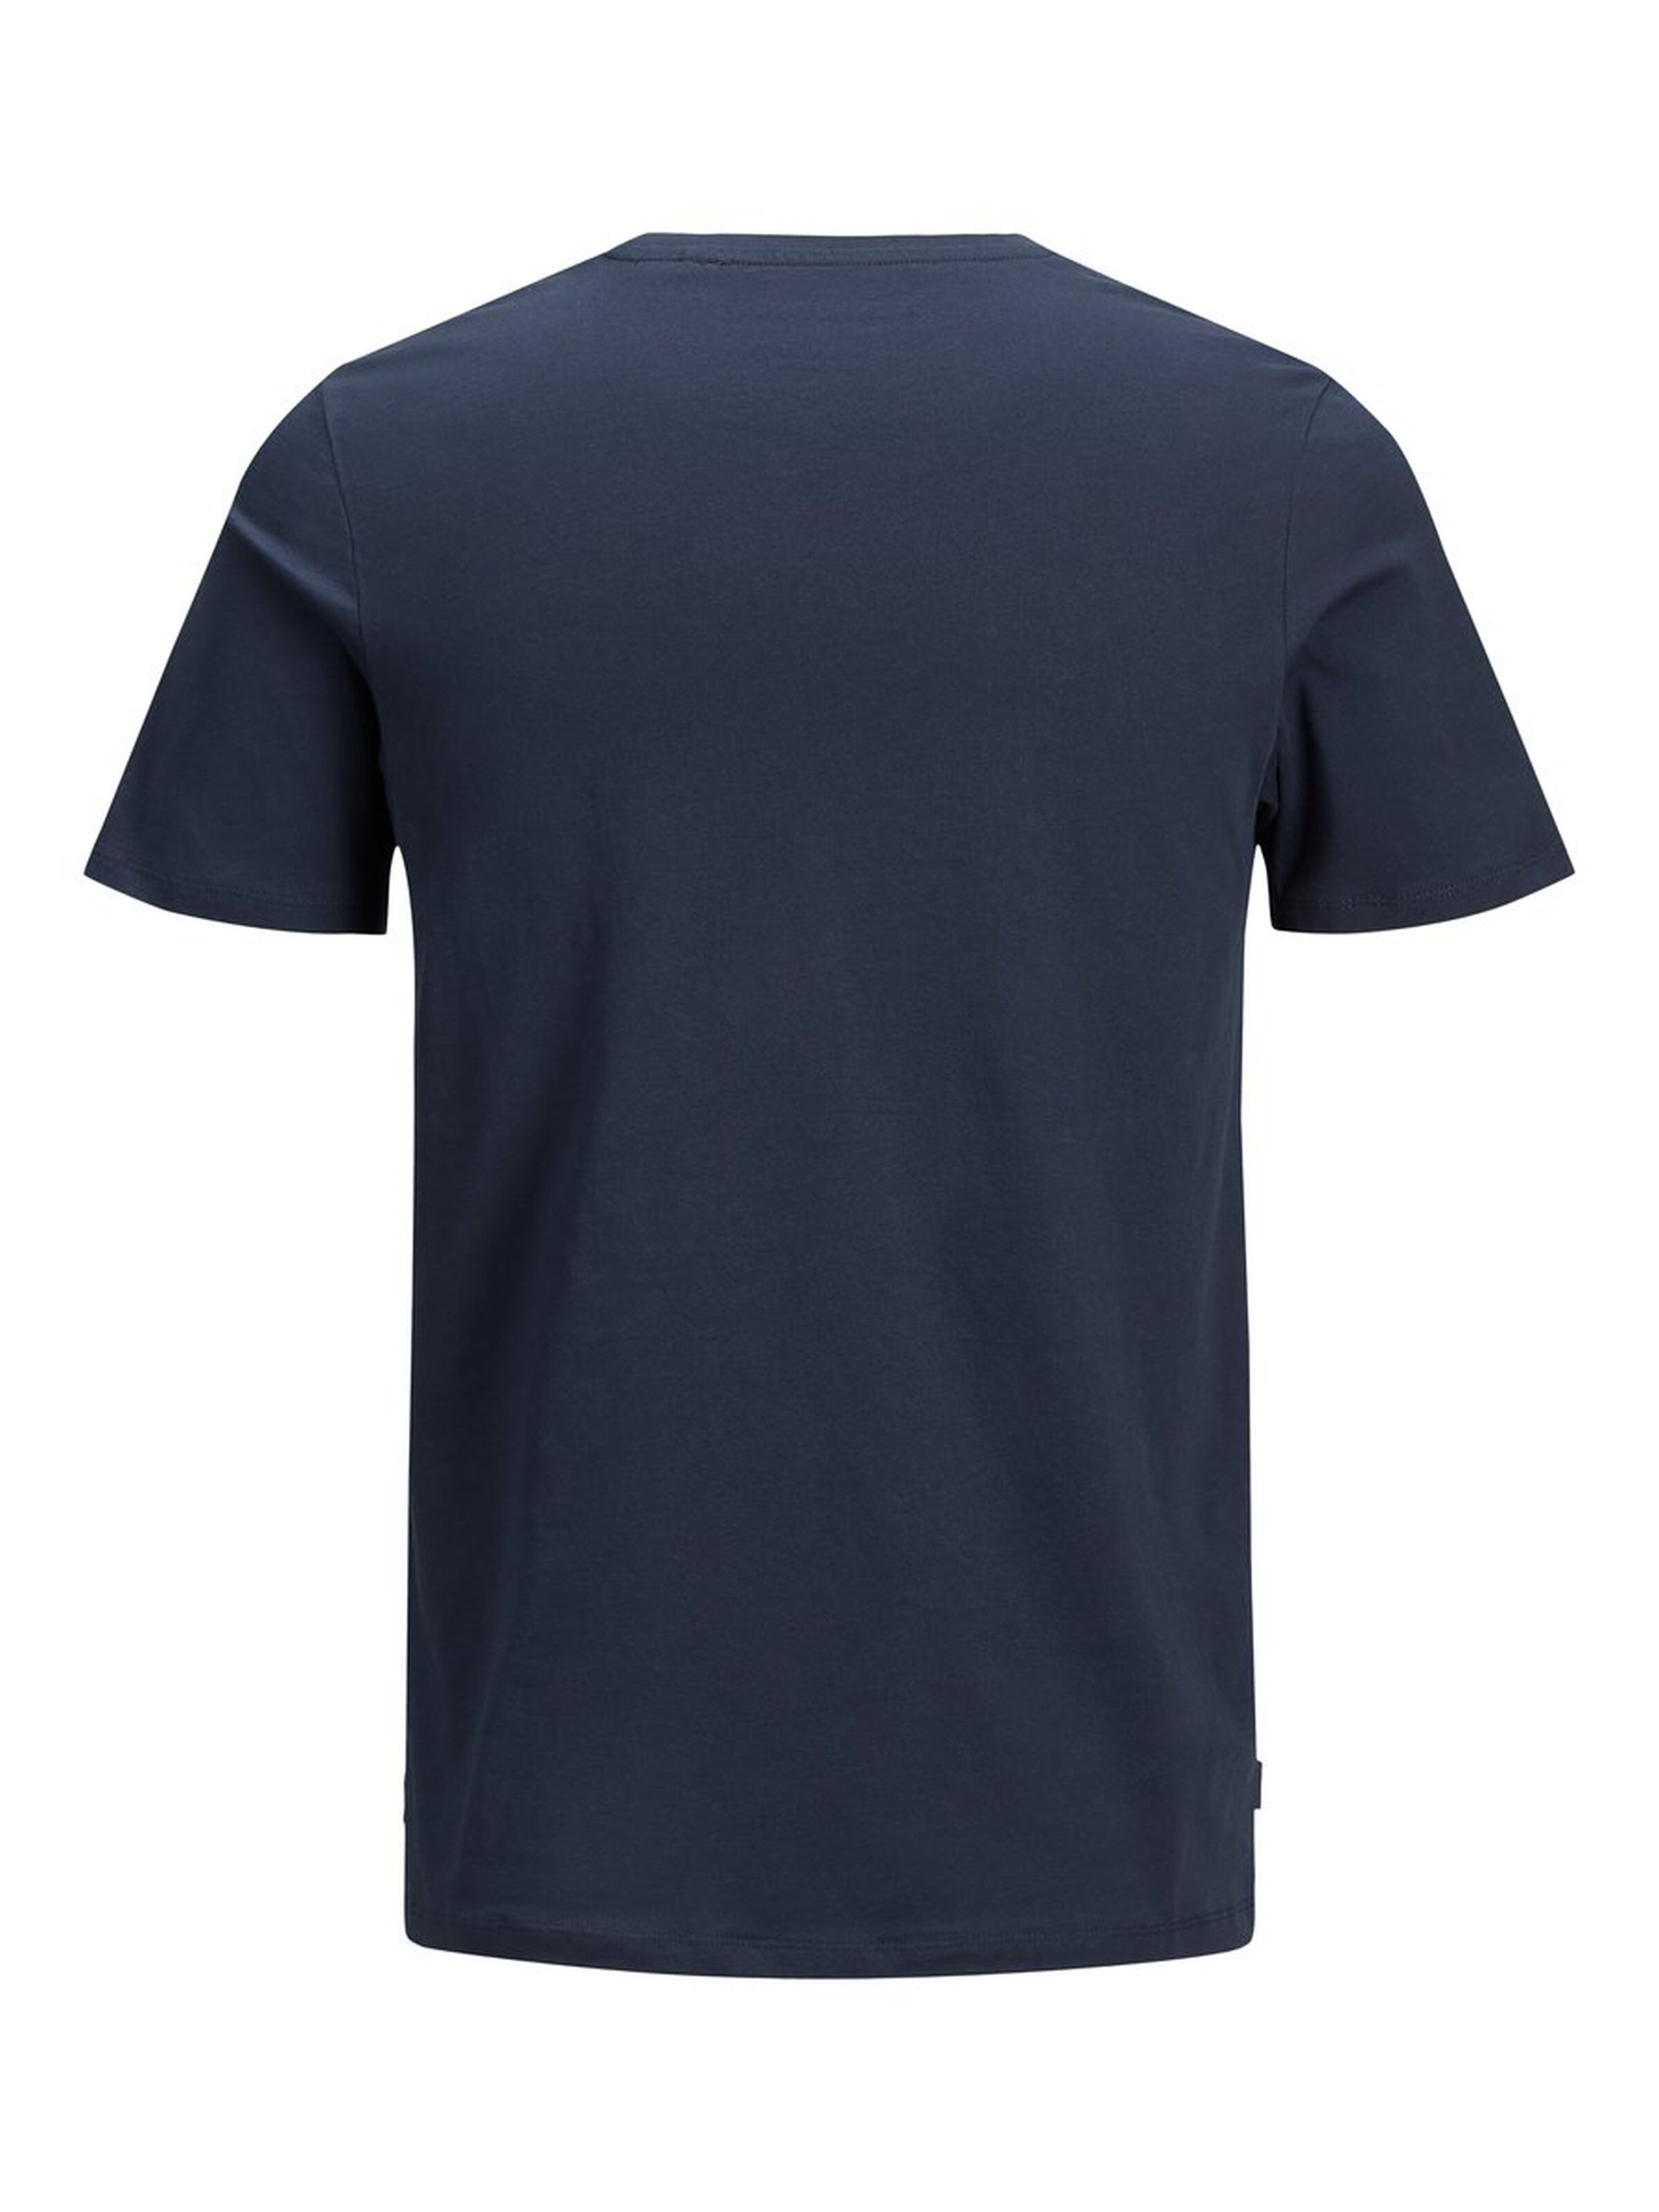 Jack & Jones - Cotton T-shirt, Dark Blue, large image number 1